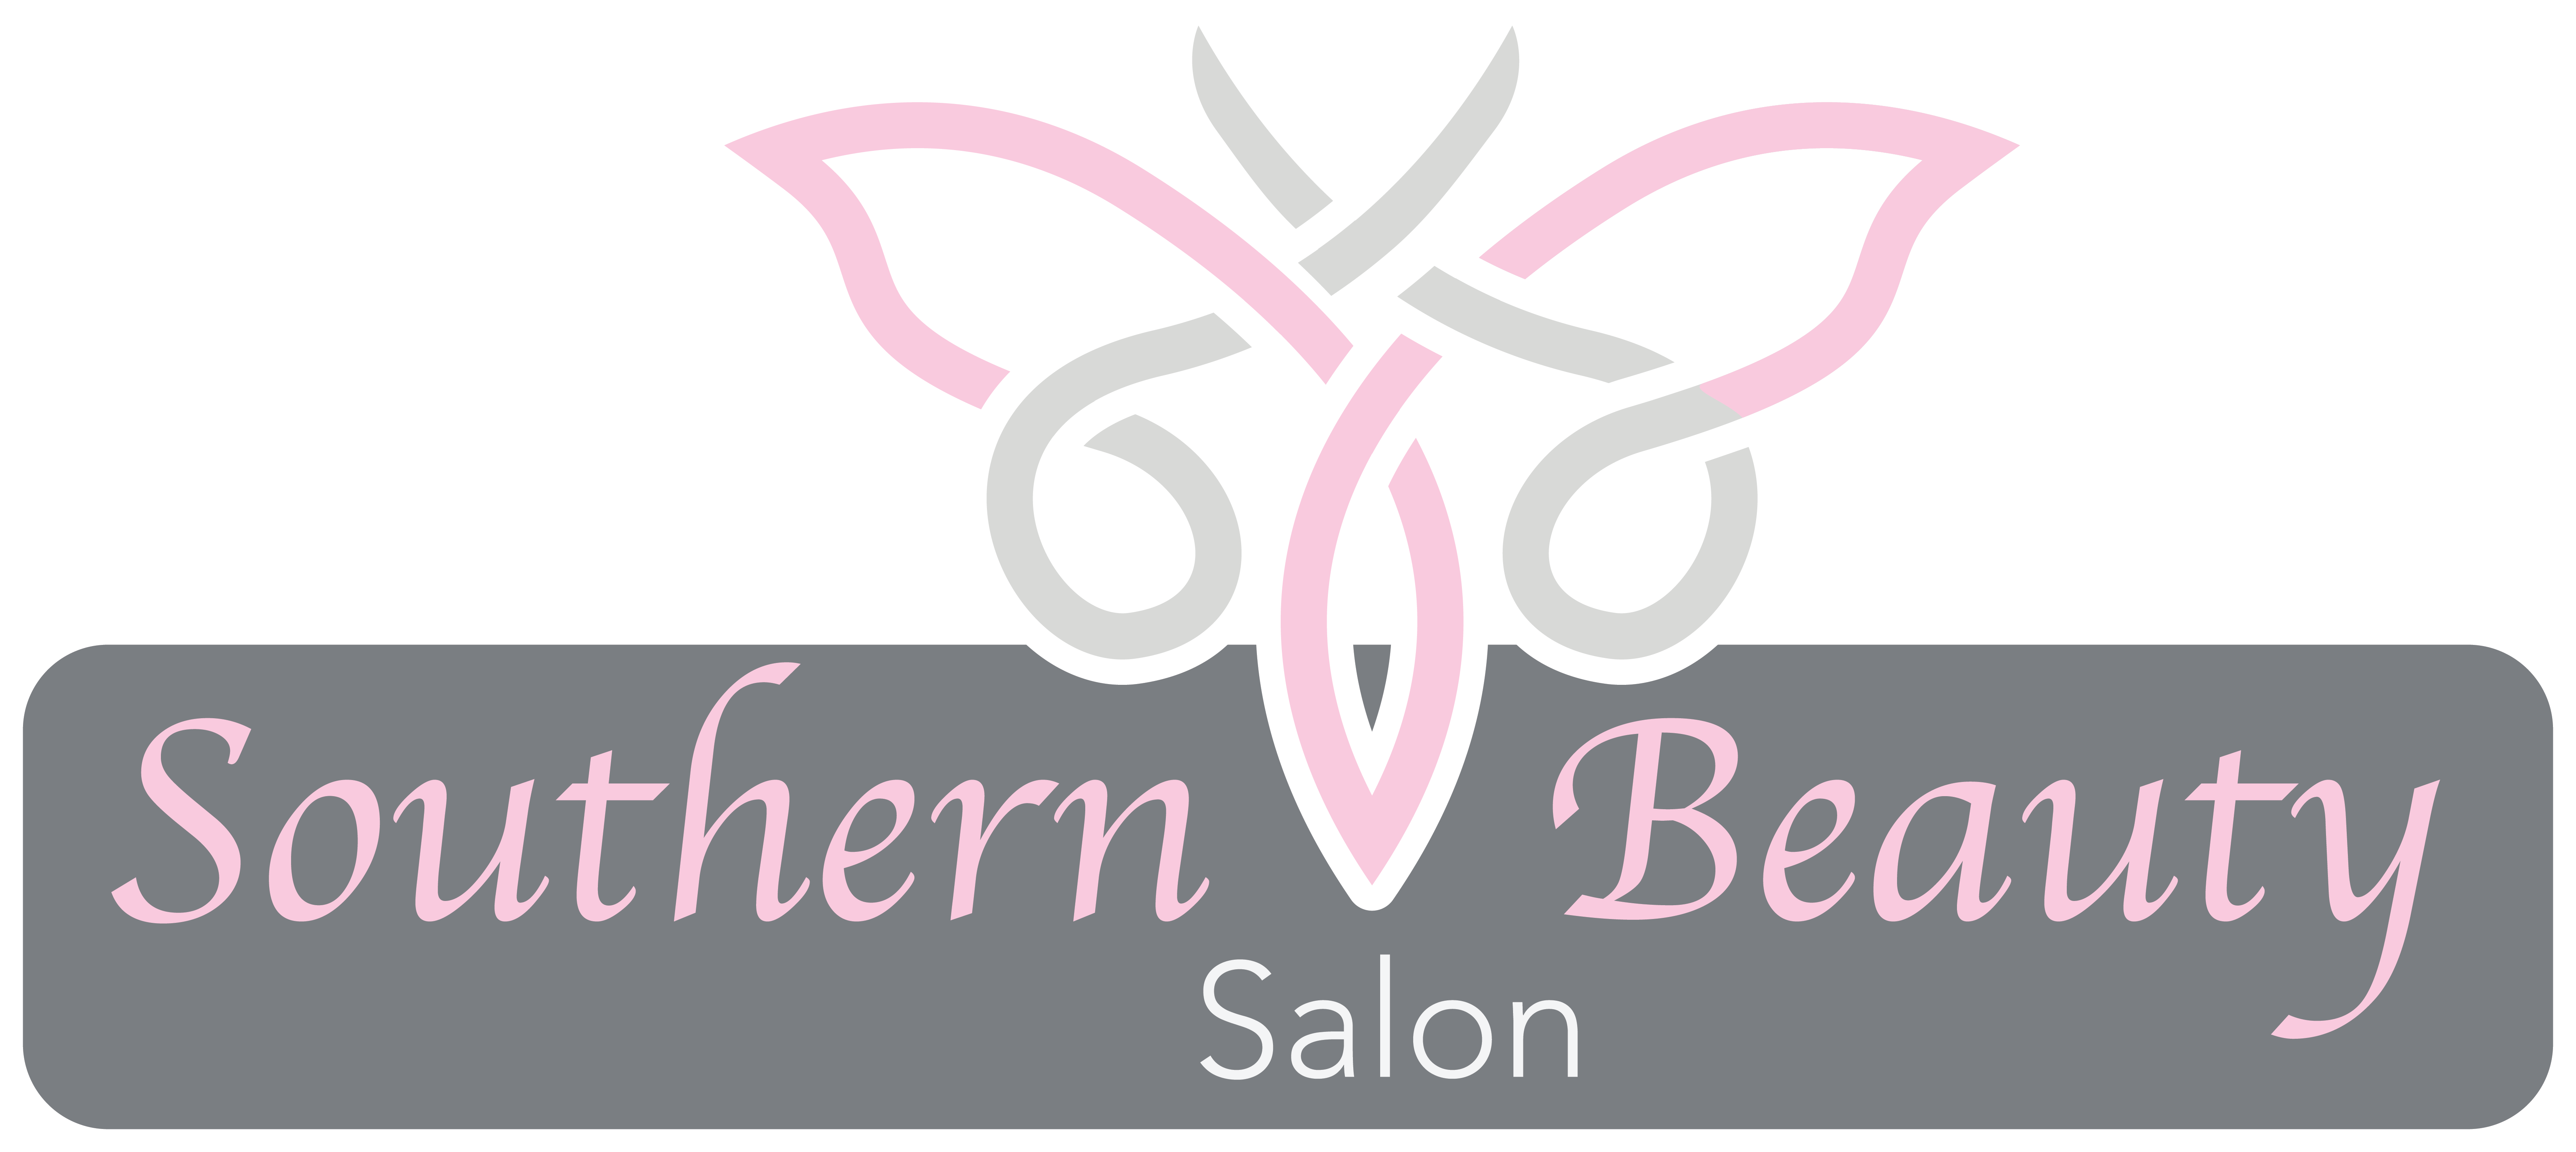 Southern Beauty Salon